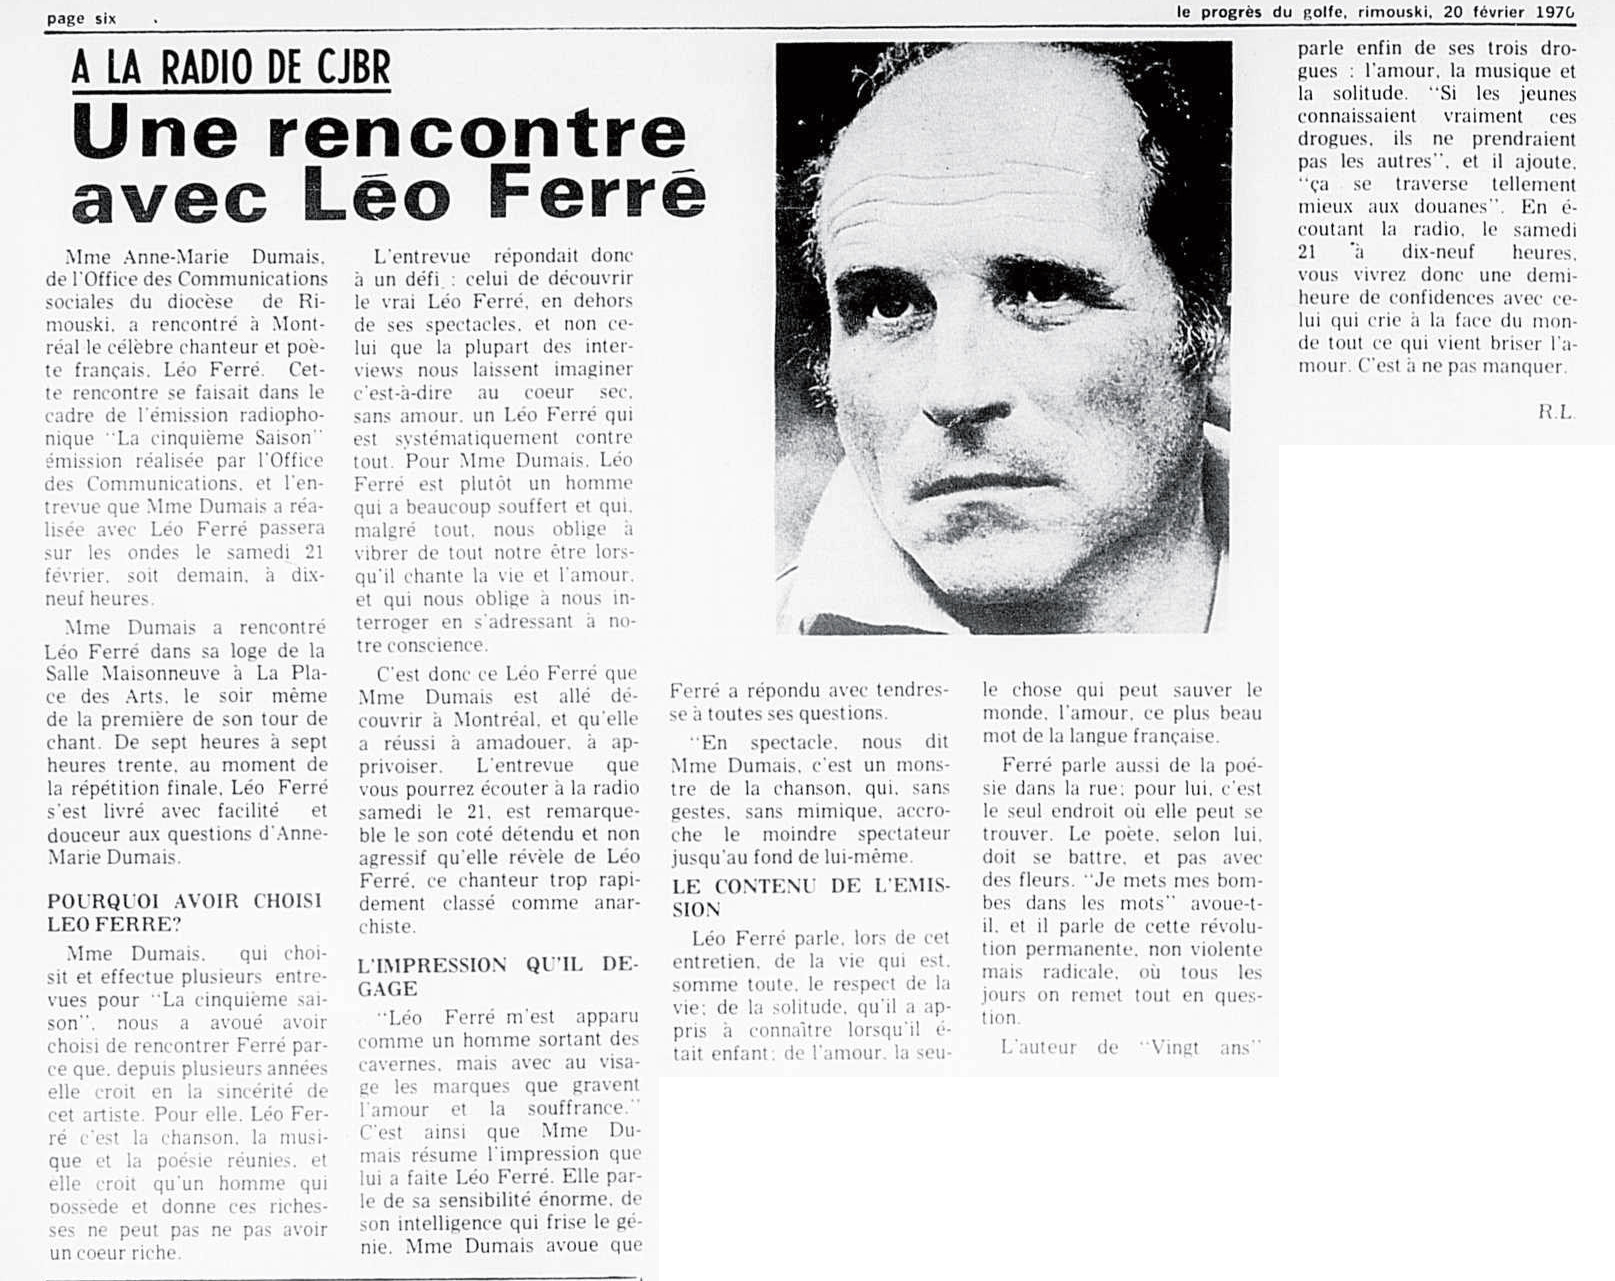 Léo Ferré - Le Progrès du Golfe (Rimouski), 1904-1970, vendredi 20 février 1970